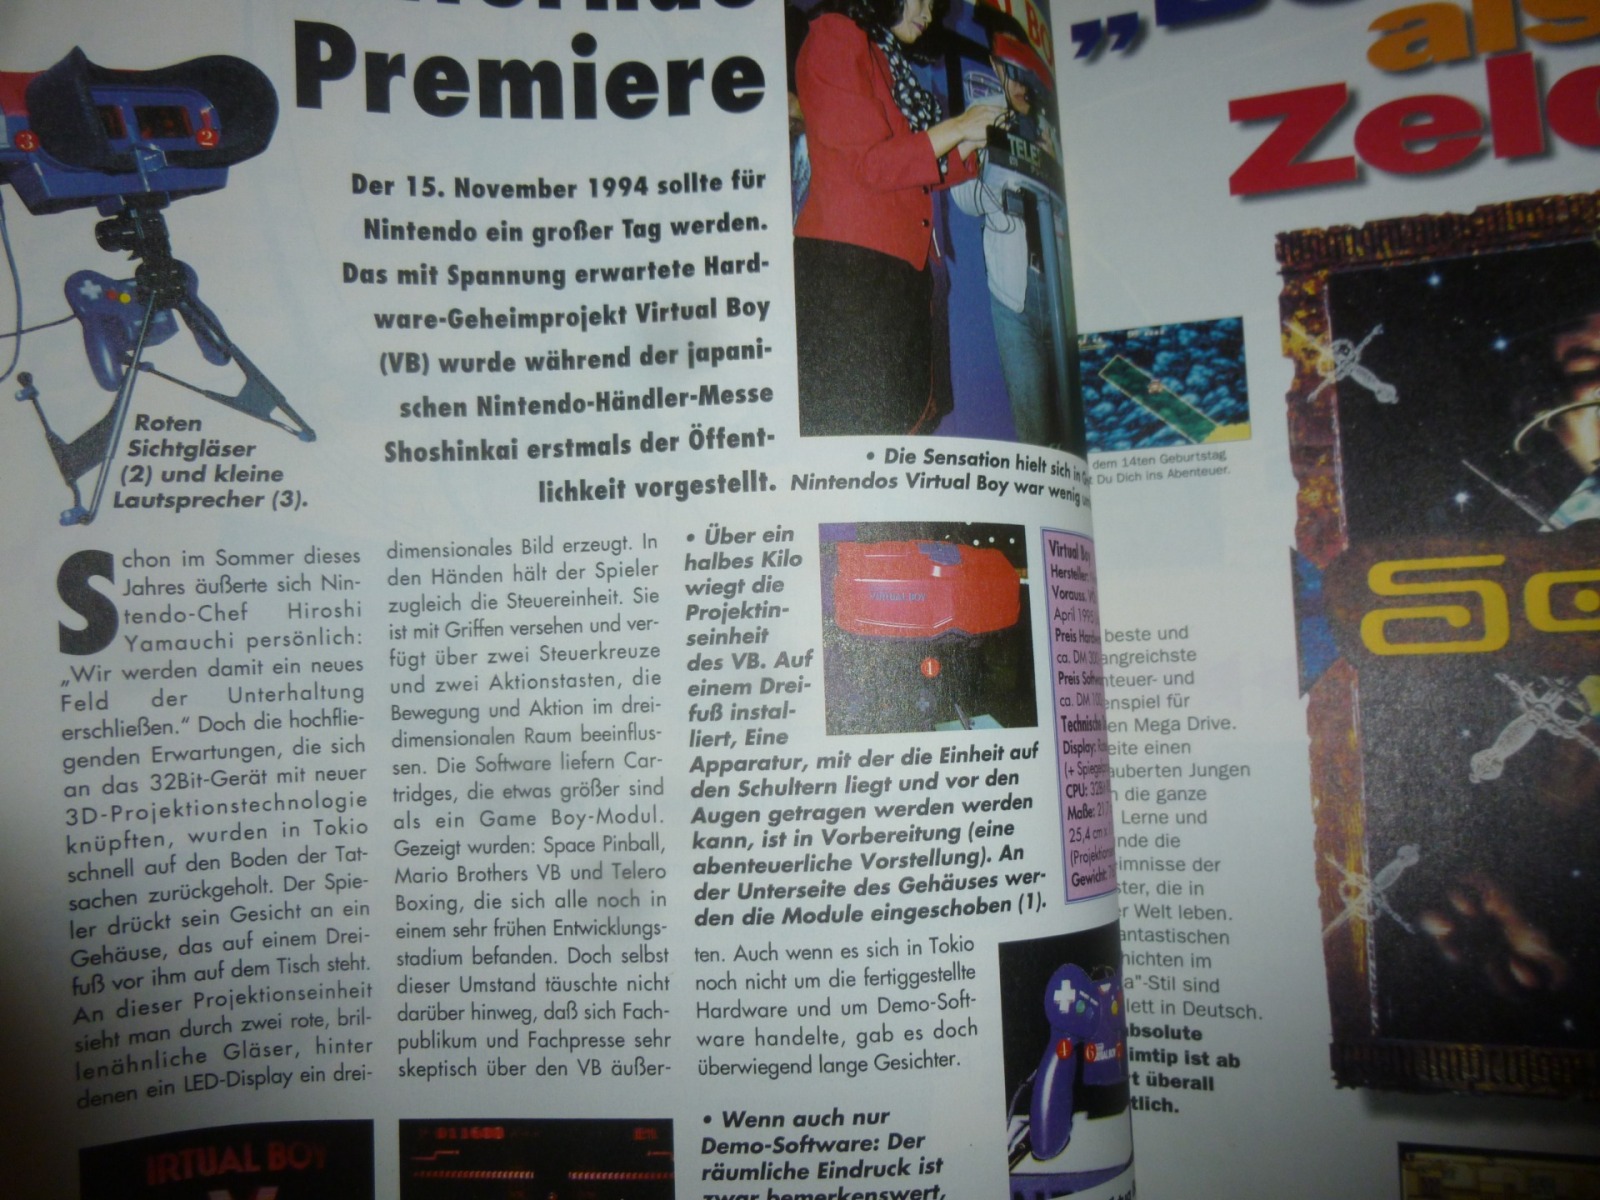 Play Time - Das Computer- und Videospiele-Magazin - Ausgabe 2/95 1995 5